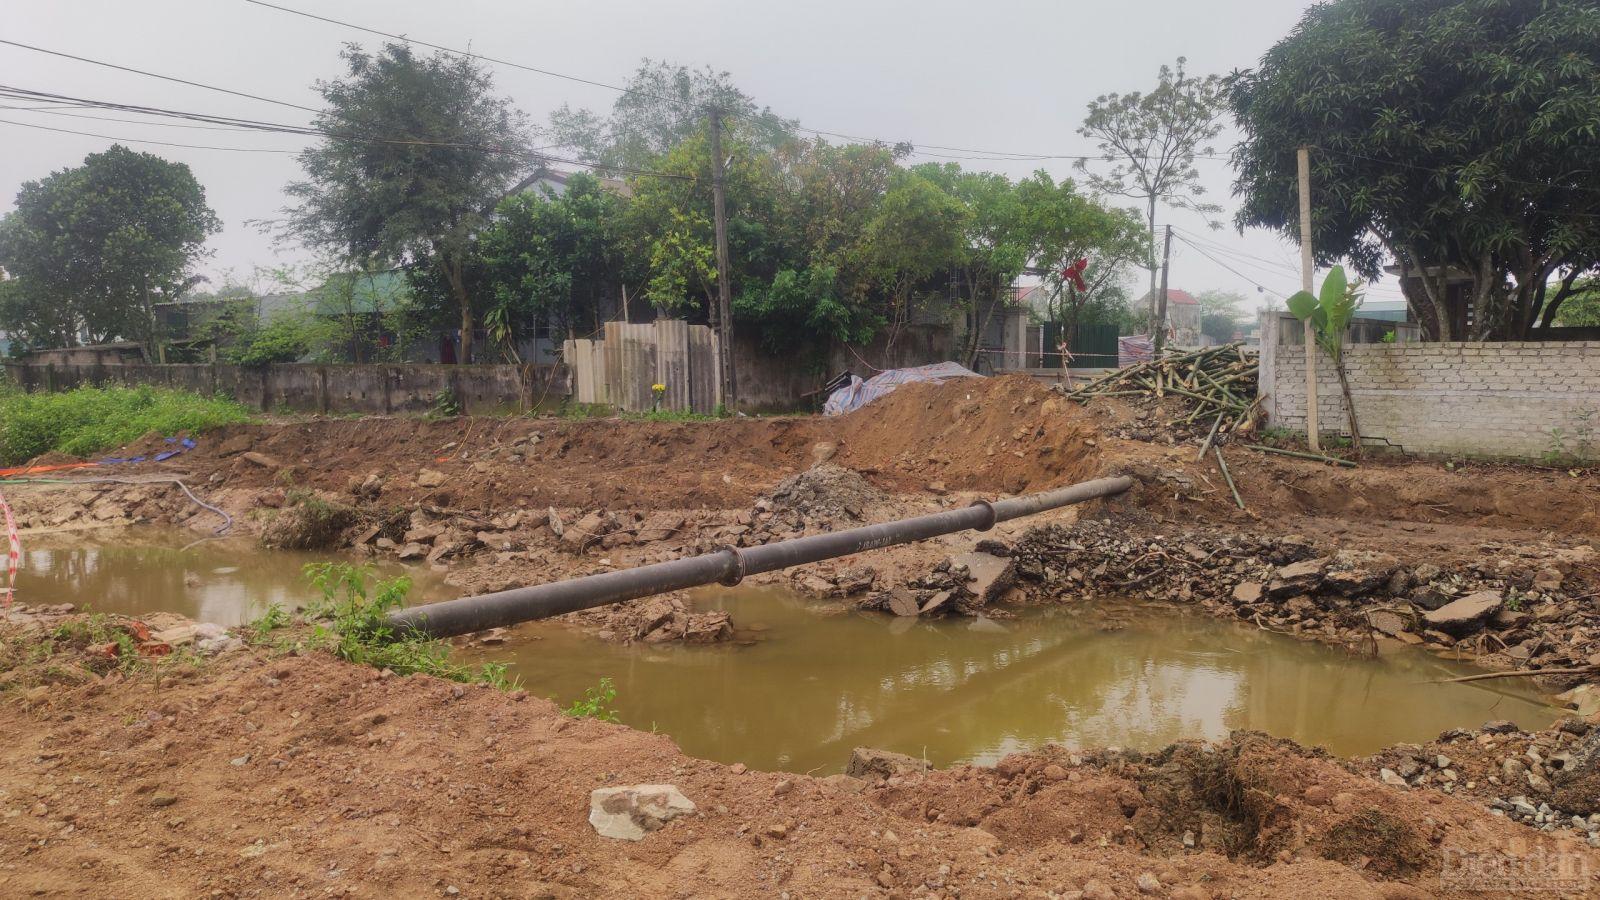 Nhà thầu thi công dự án cải tạo, nâng cấp các tuyến kênh và hạ tầng giao thông phục vụ sản xuất lúa xã Nghi Thái, huyện Nghi Lộc “phá cầu” trước, làm đường tạm sau?